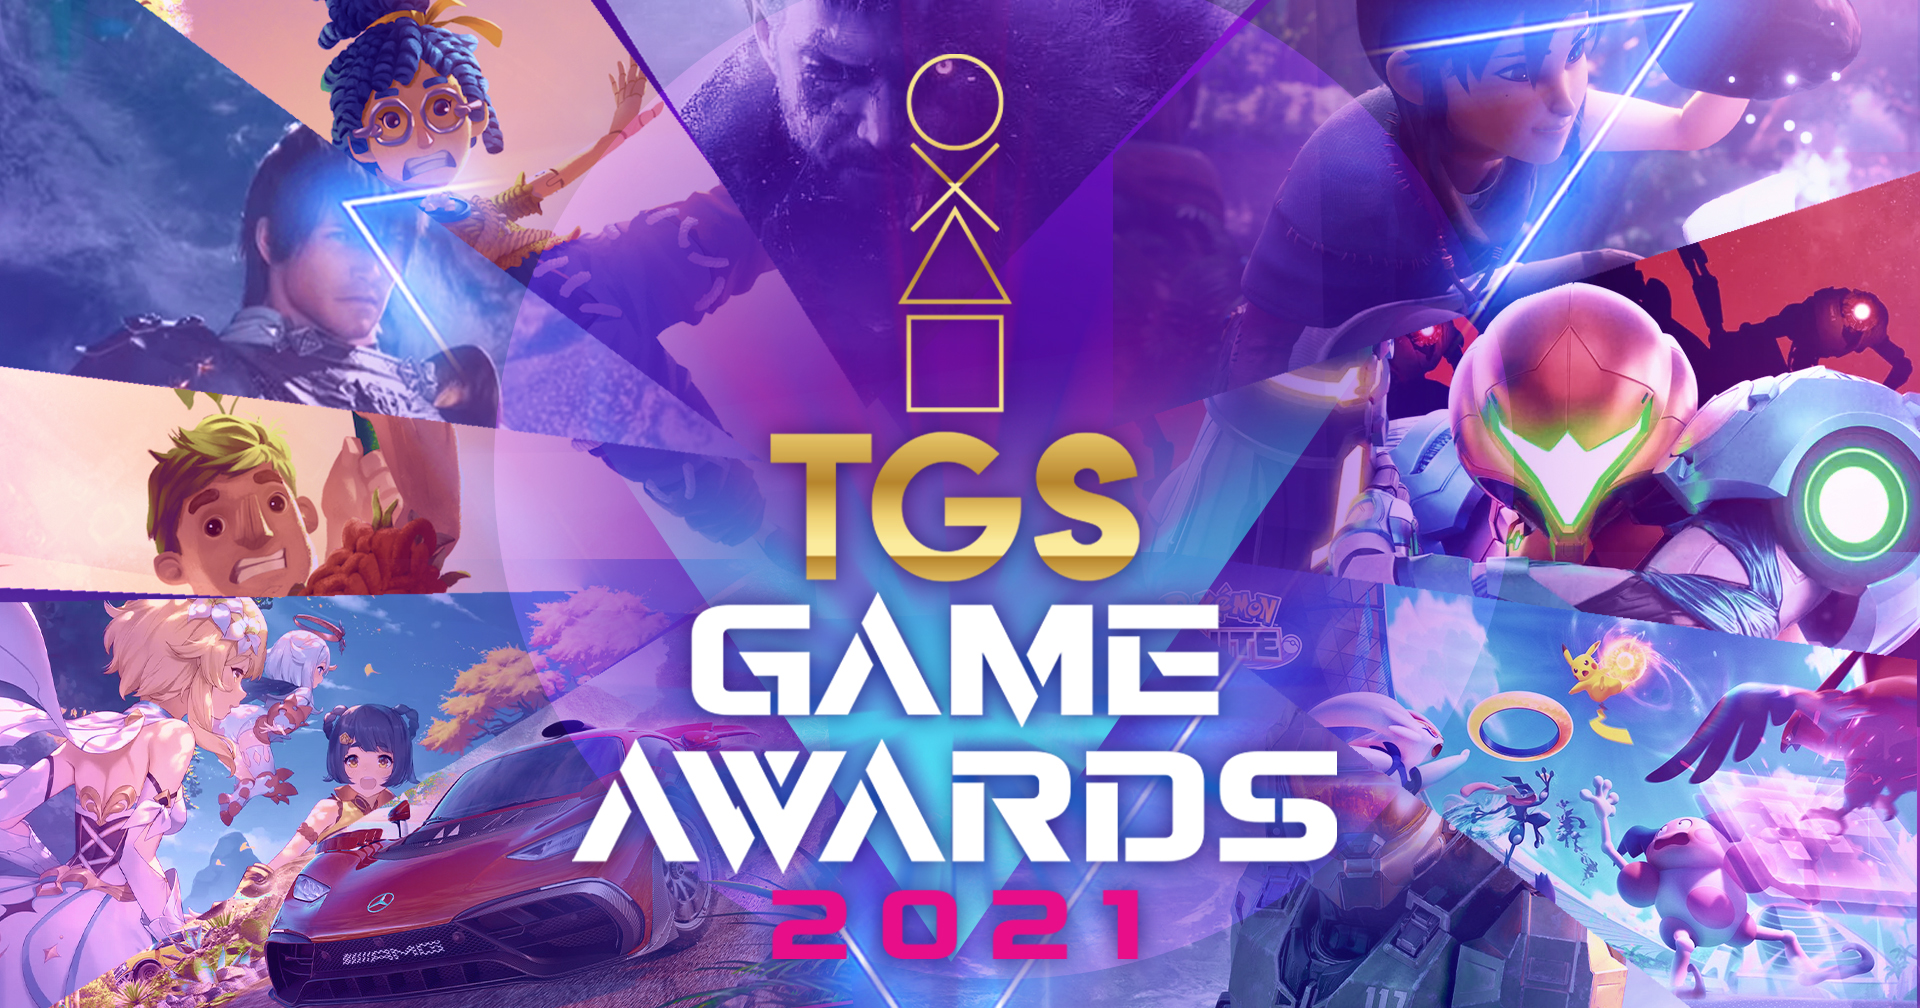 TGS Game Awards 2021 ไทยแลนด์เกมโชว์ขอมอบรางวัลเกมประจำปี!